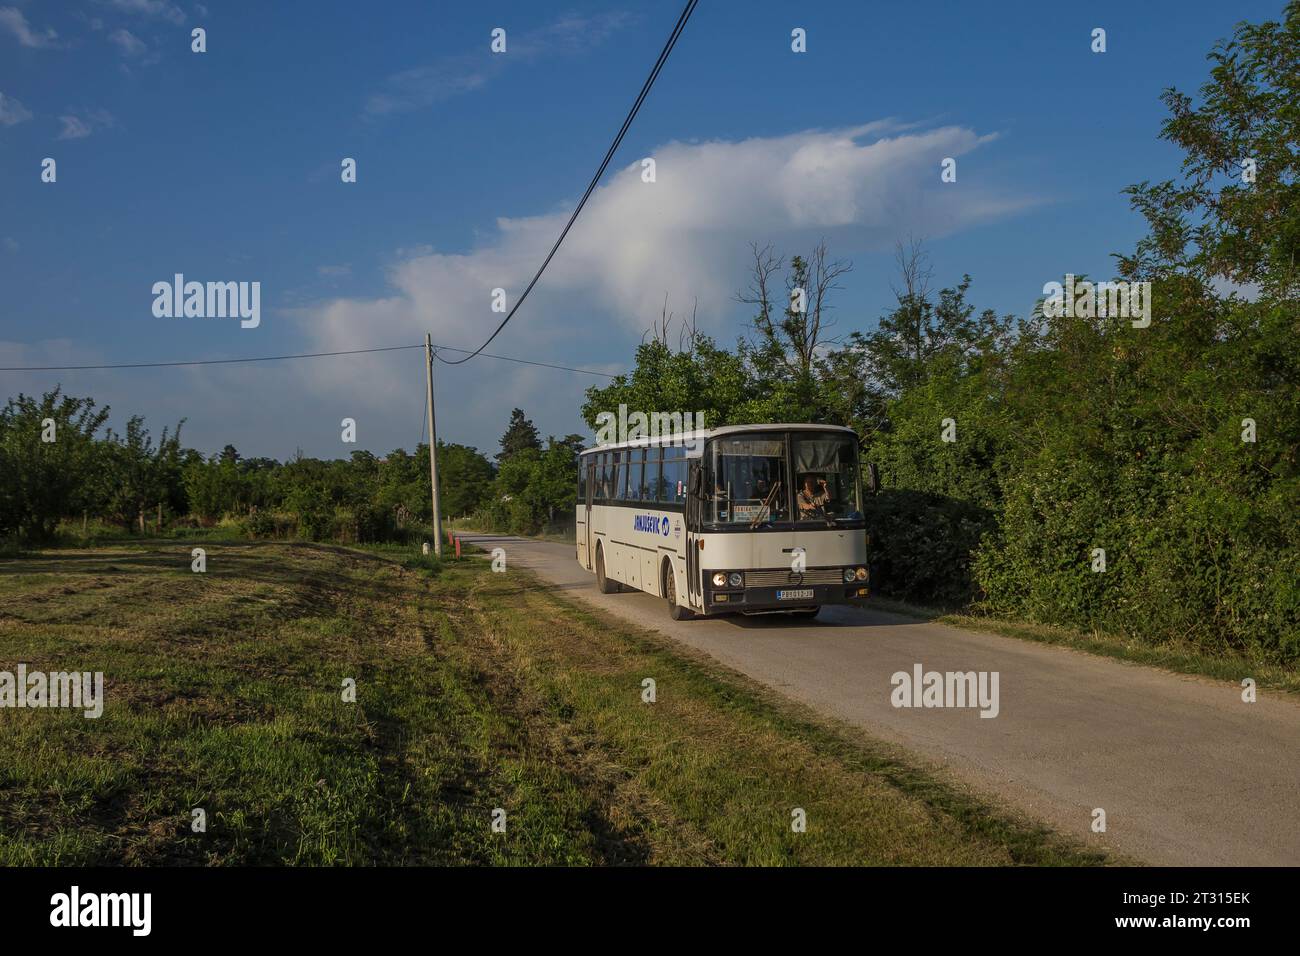 6.06.2022. Serbia, near Topola, bus station. Sanos S415 from Topola on local route. Stock Photo